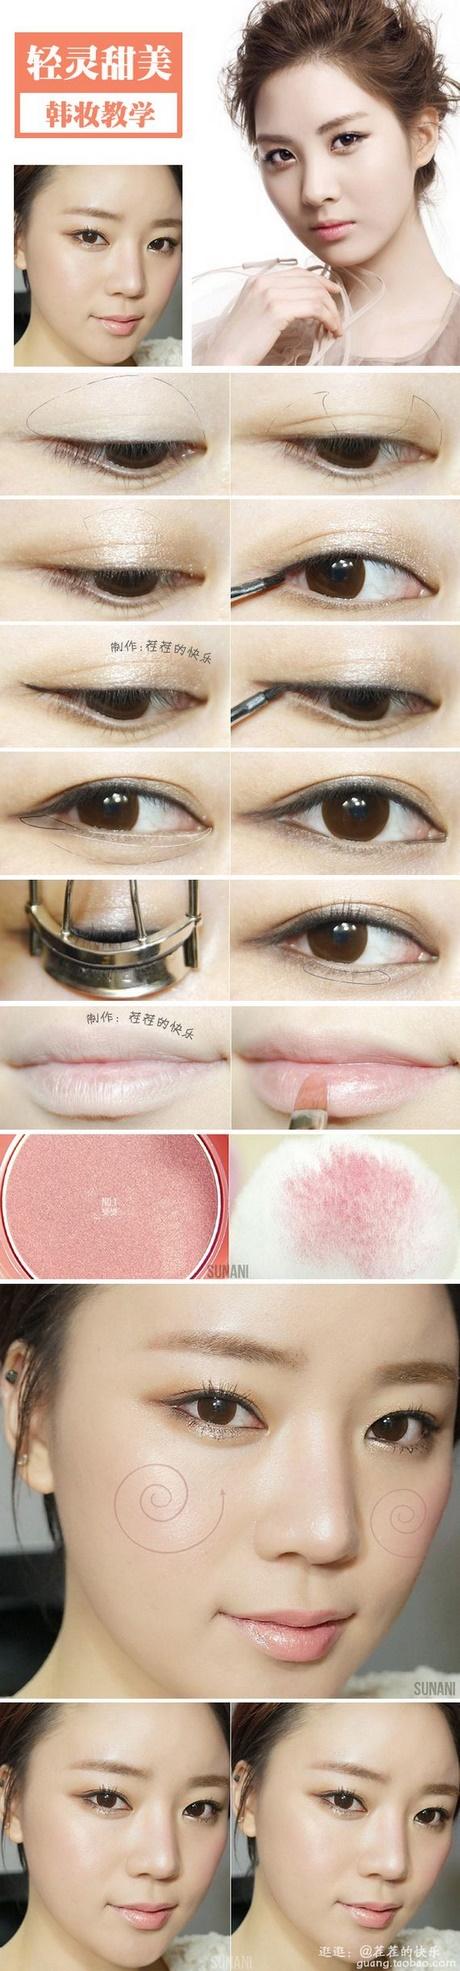 asian-makeup-artist-tutorial-50_2 Les voor Aziatische make-upartiesten